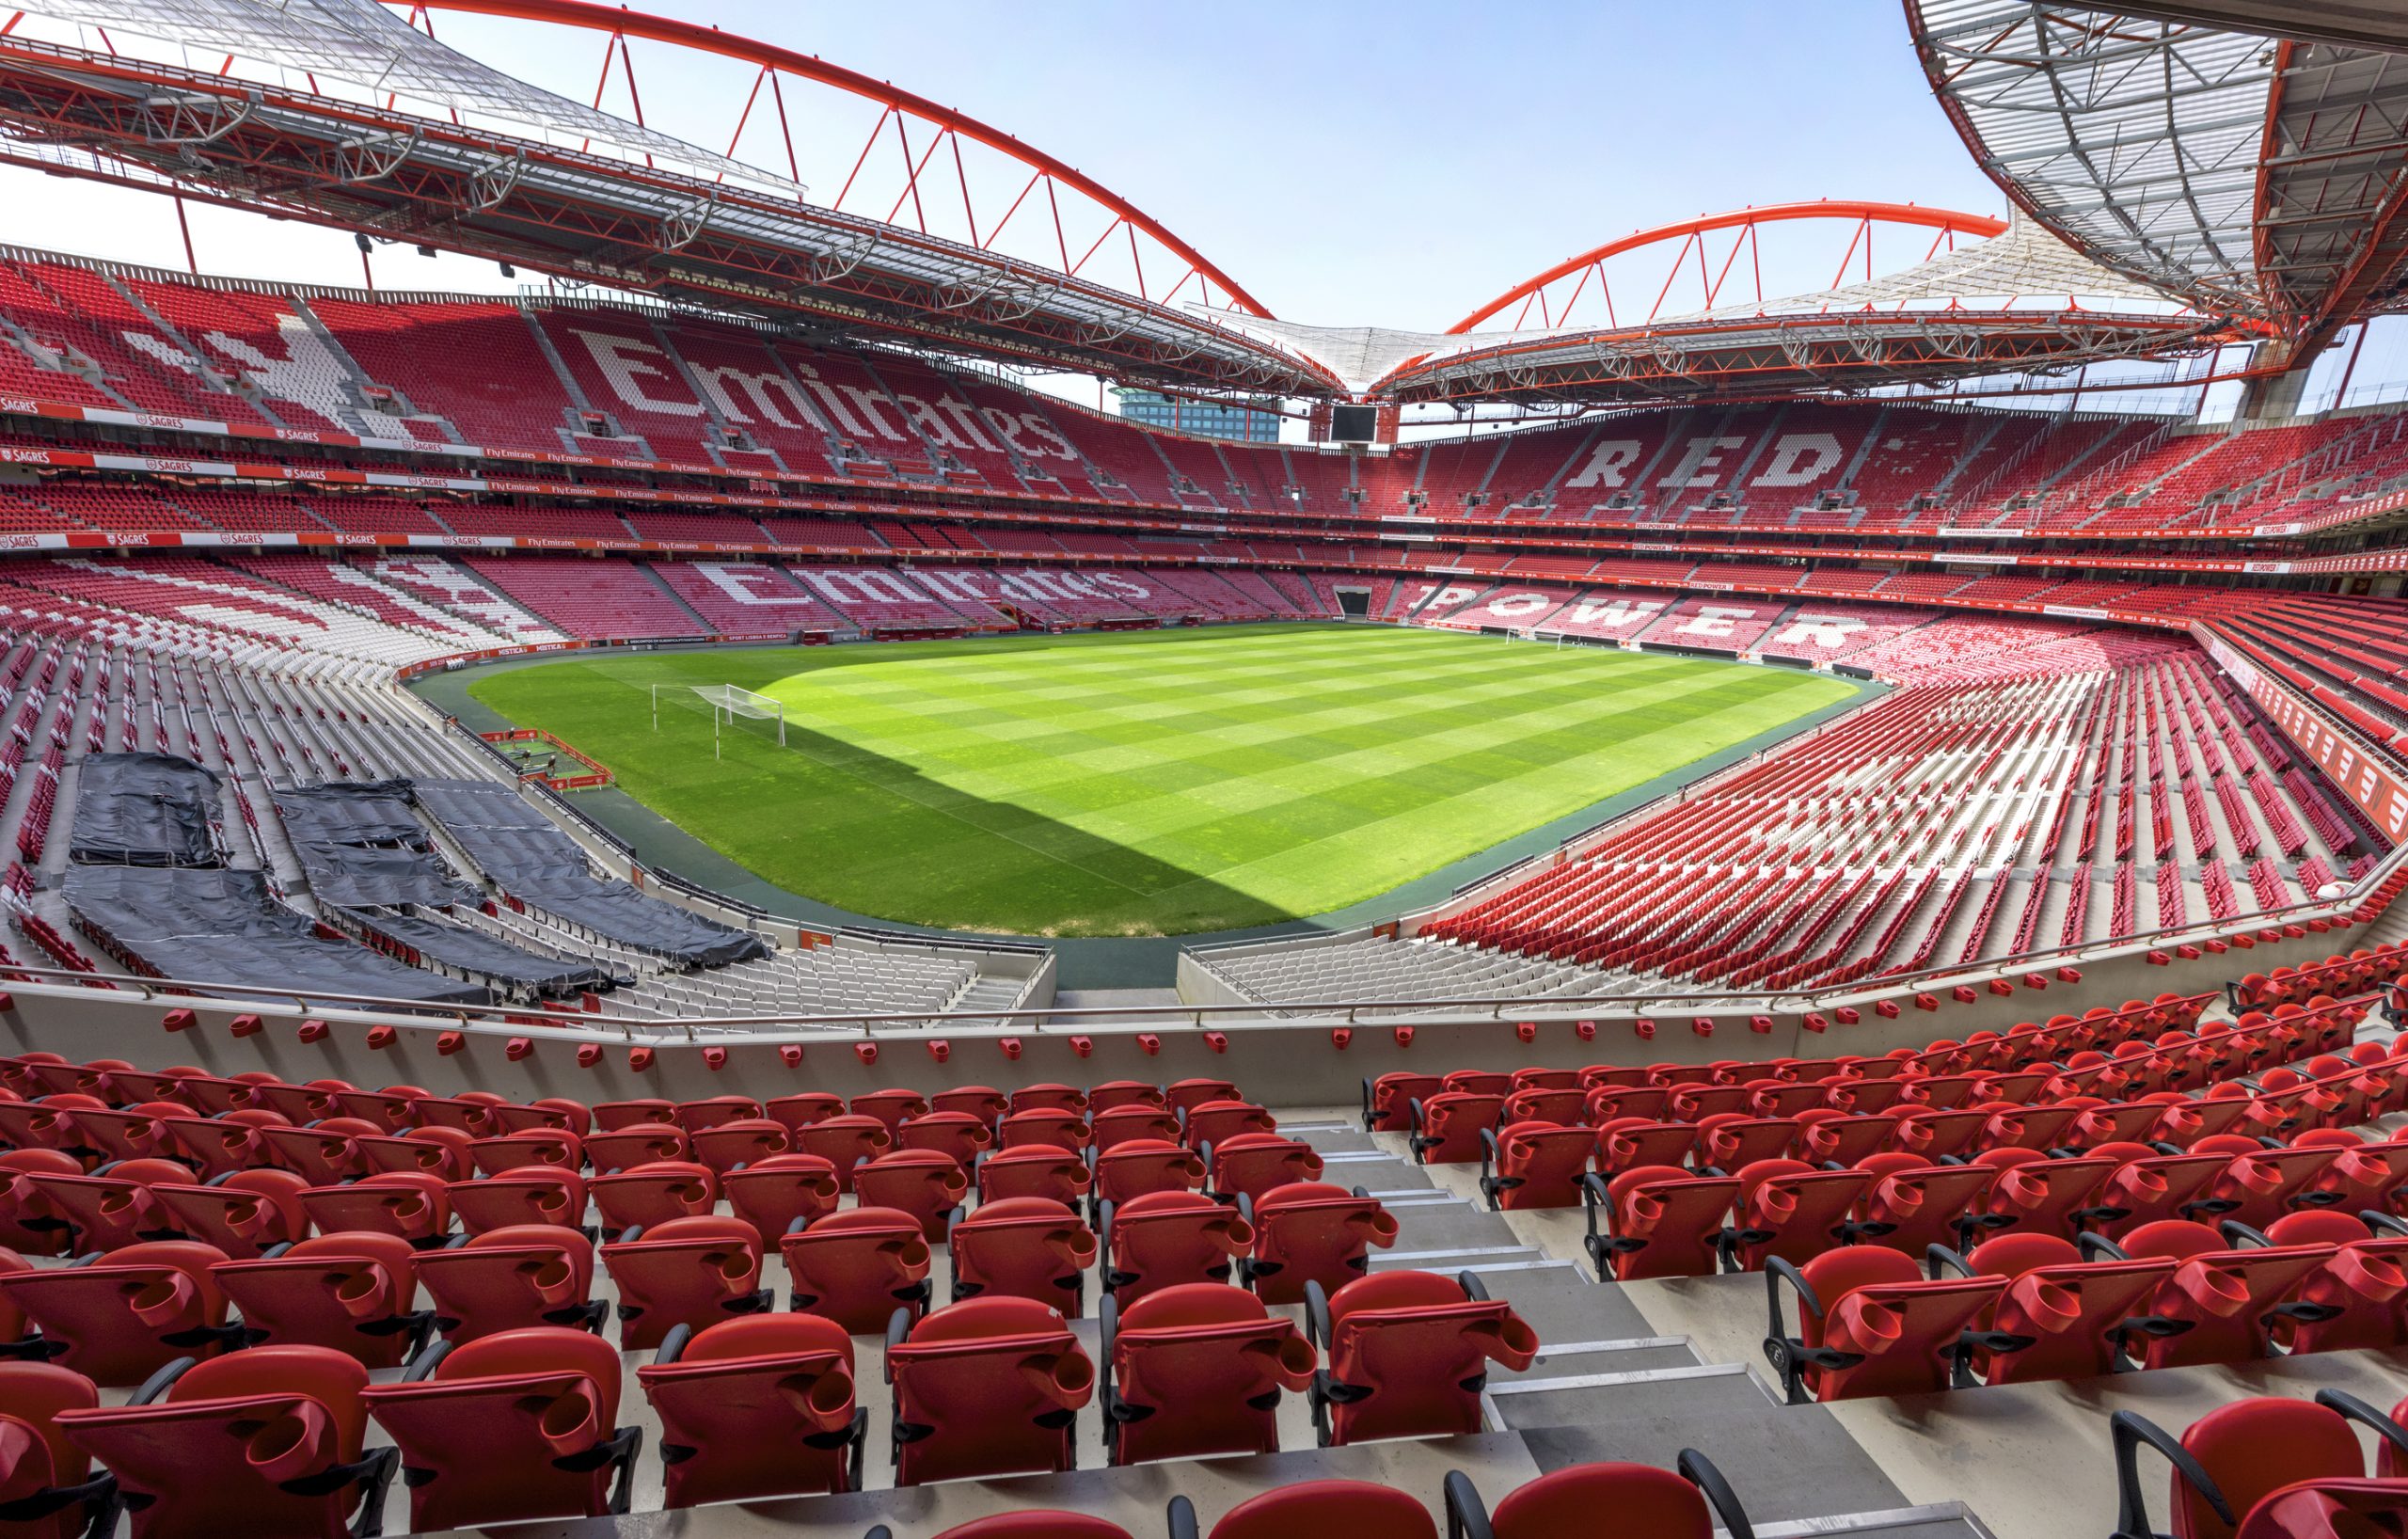 Auditoria não encontrou indícios de que SAD do Benfica tenha sido “diretamente lesada”